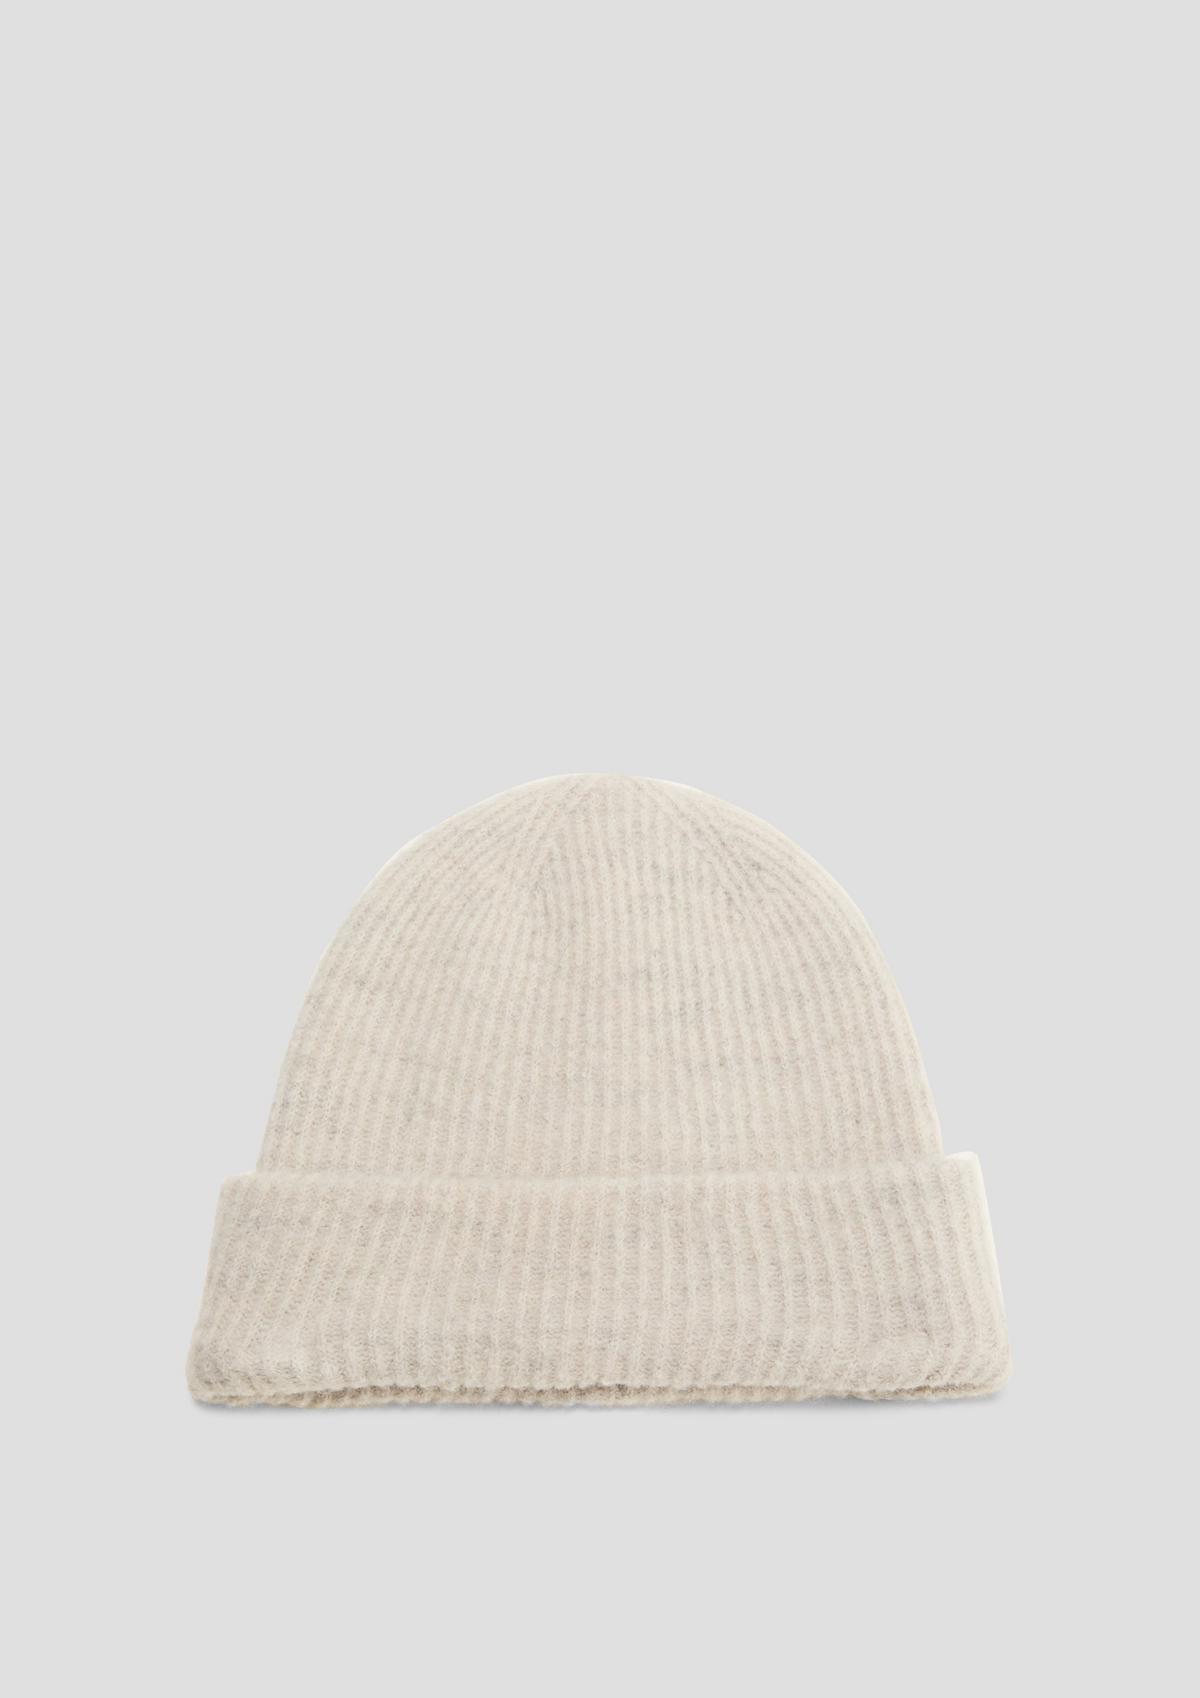 Knit hat in a wool blend